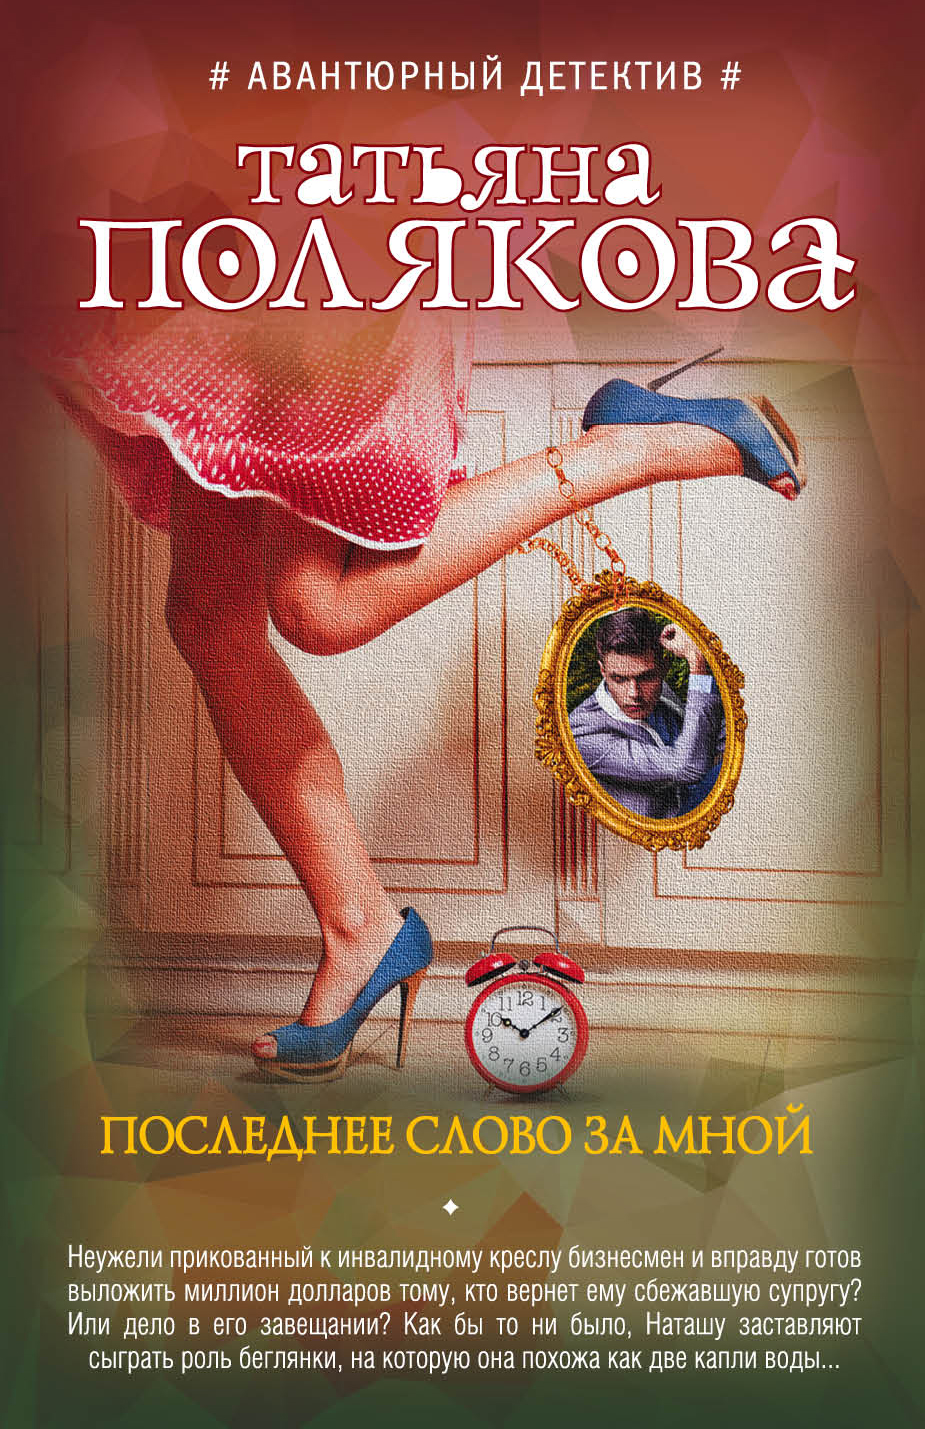 Читать т полякову. Детективы книги. Книги детективы Поляковой.